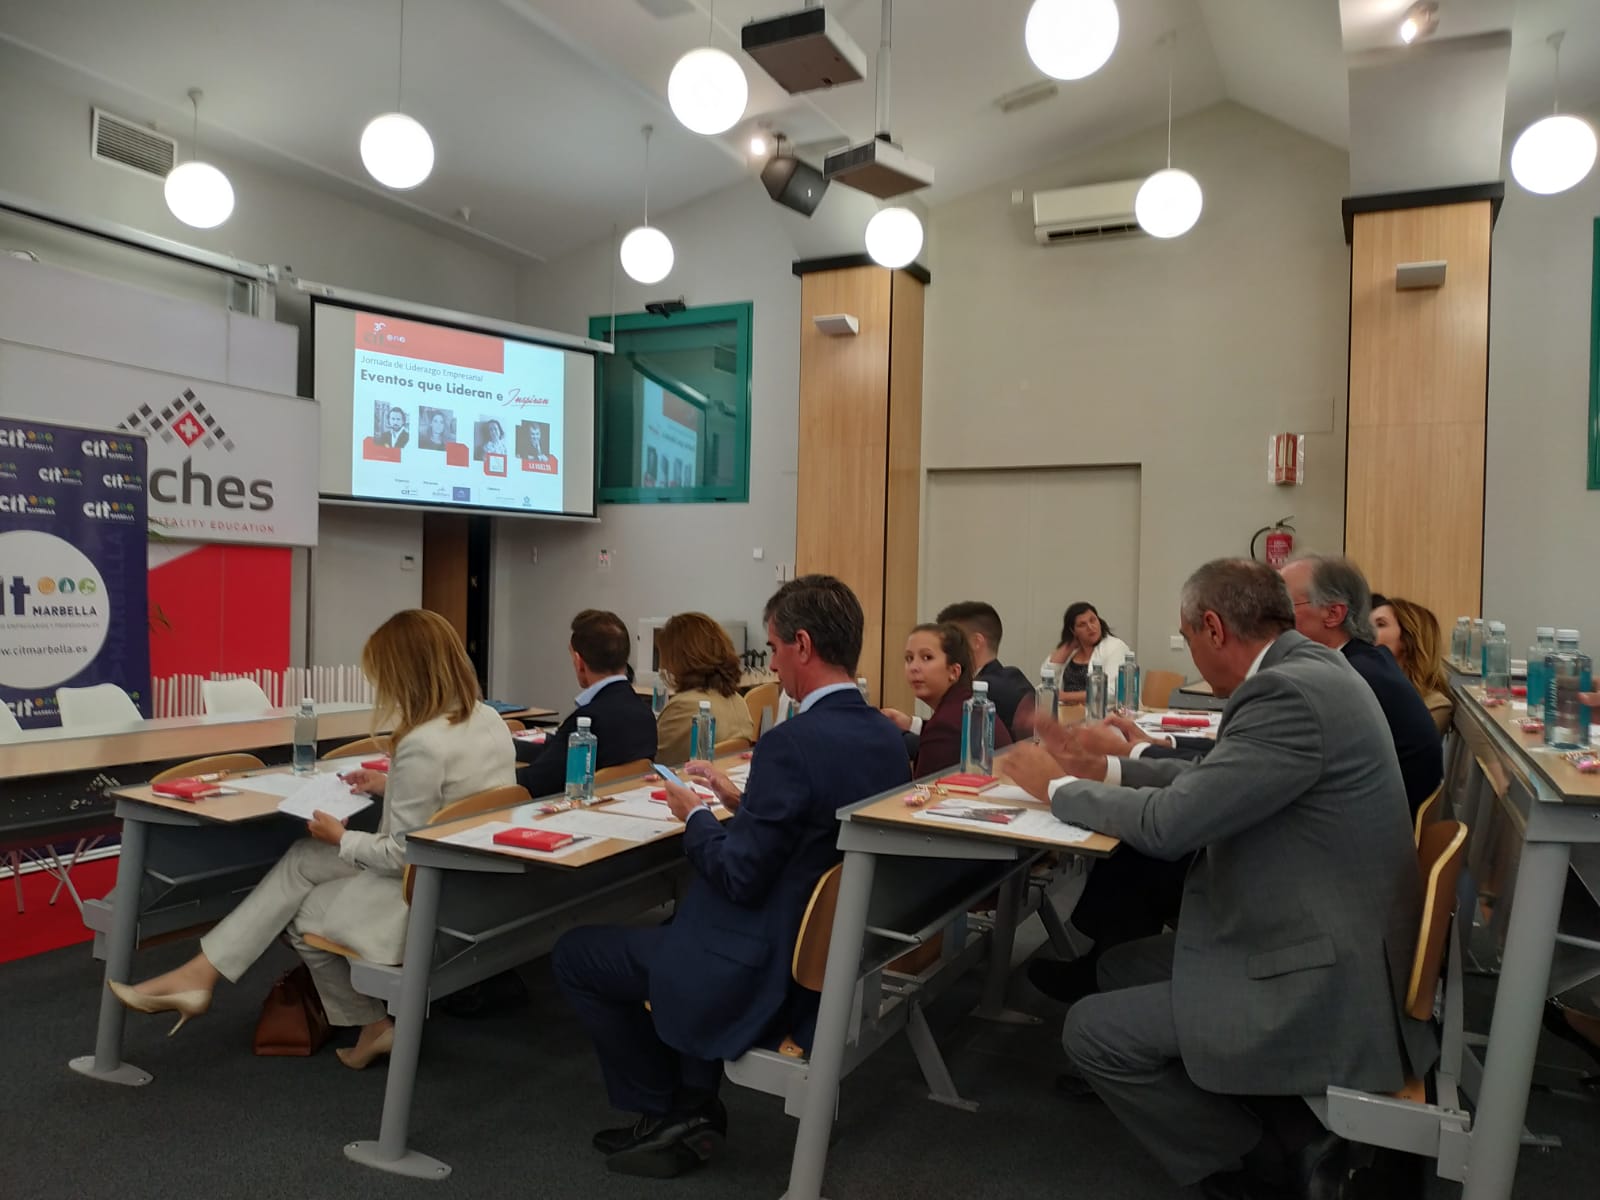 Éxito de la jornada Liderazgo Empresarial 'Eventos que Lideran e Inspiran" organizada por el CIT Marbella